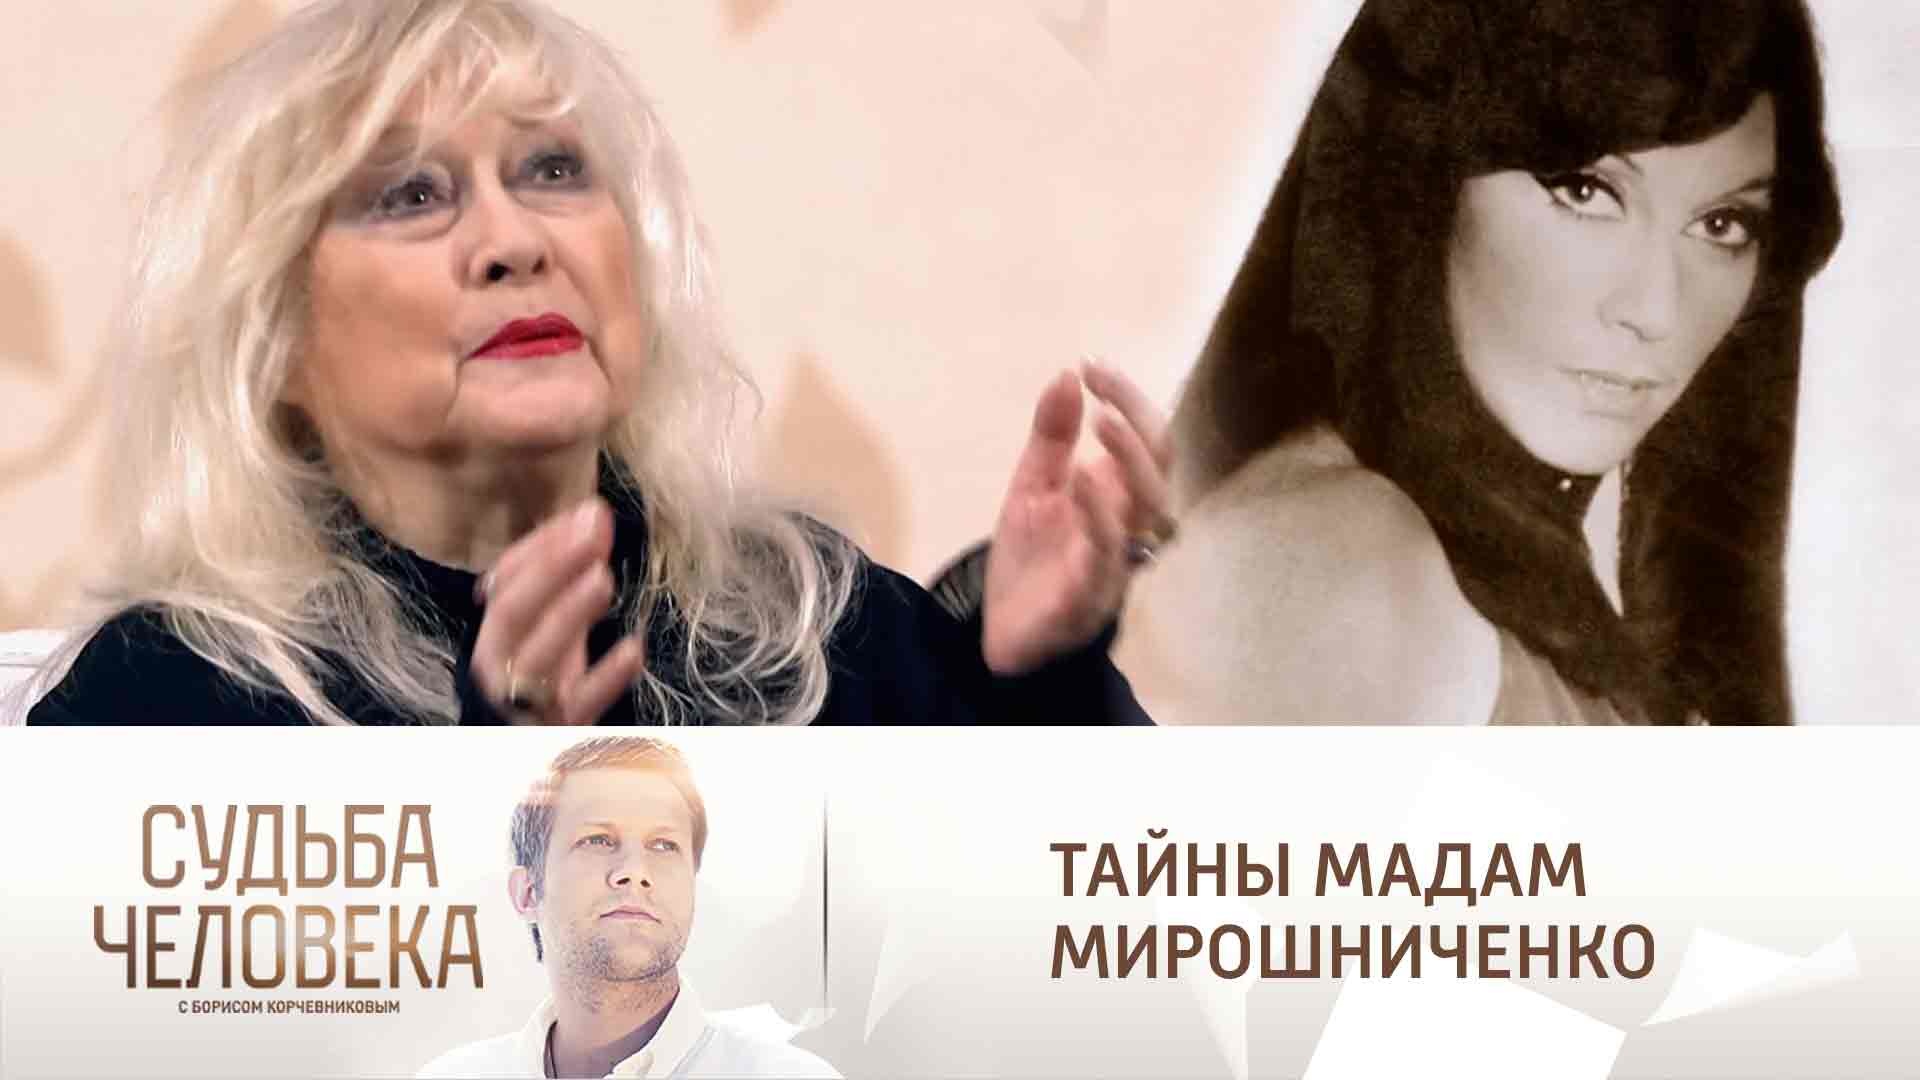 Ирина Мирошниченко судьба человека 10.11.2021